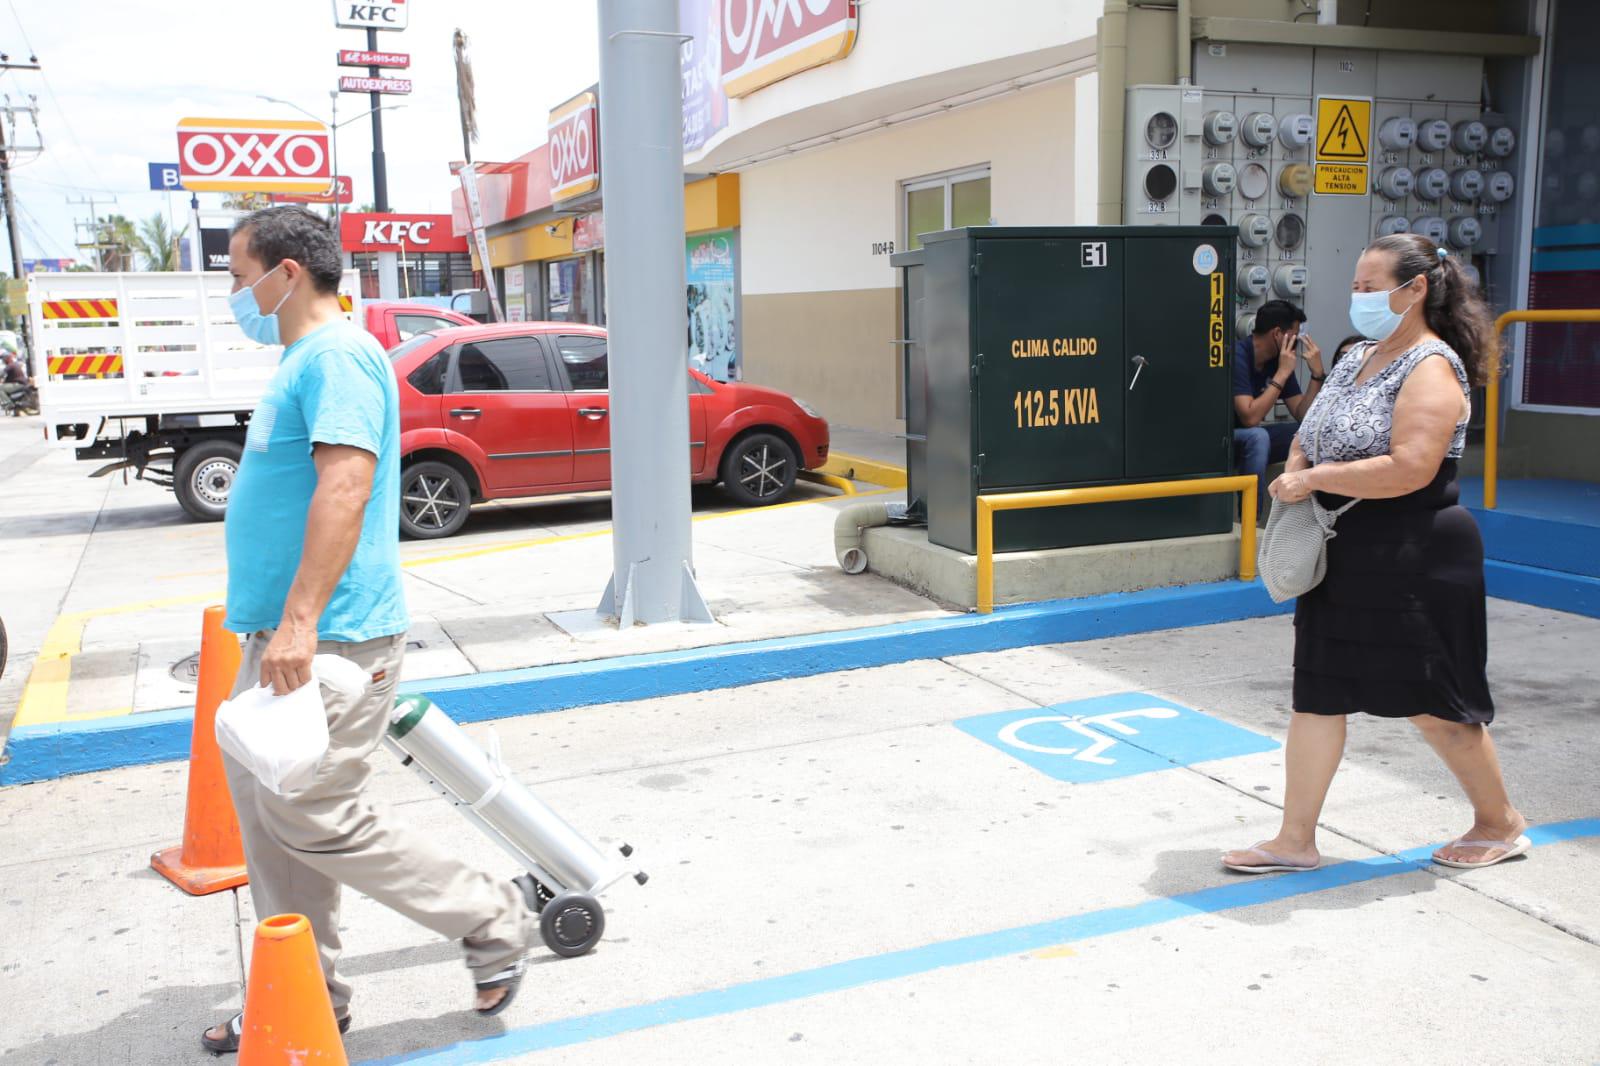 $!En Mazatlán crece un 80% demanda de insumos médicos; se estaban estabilizando los precios